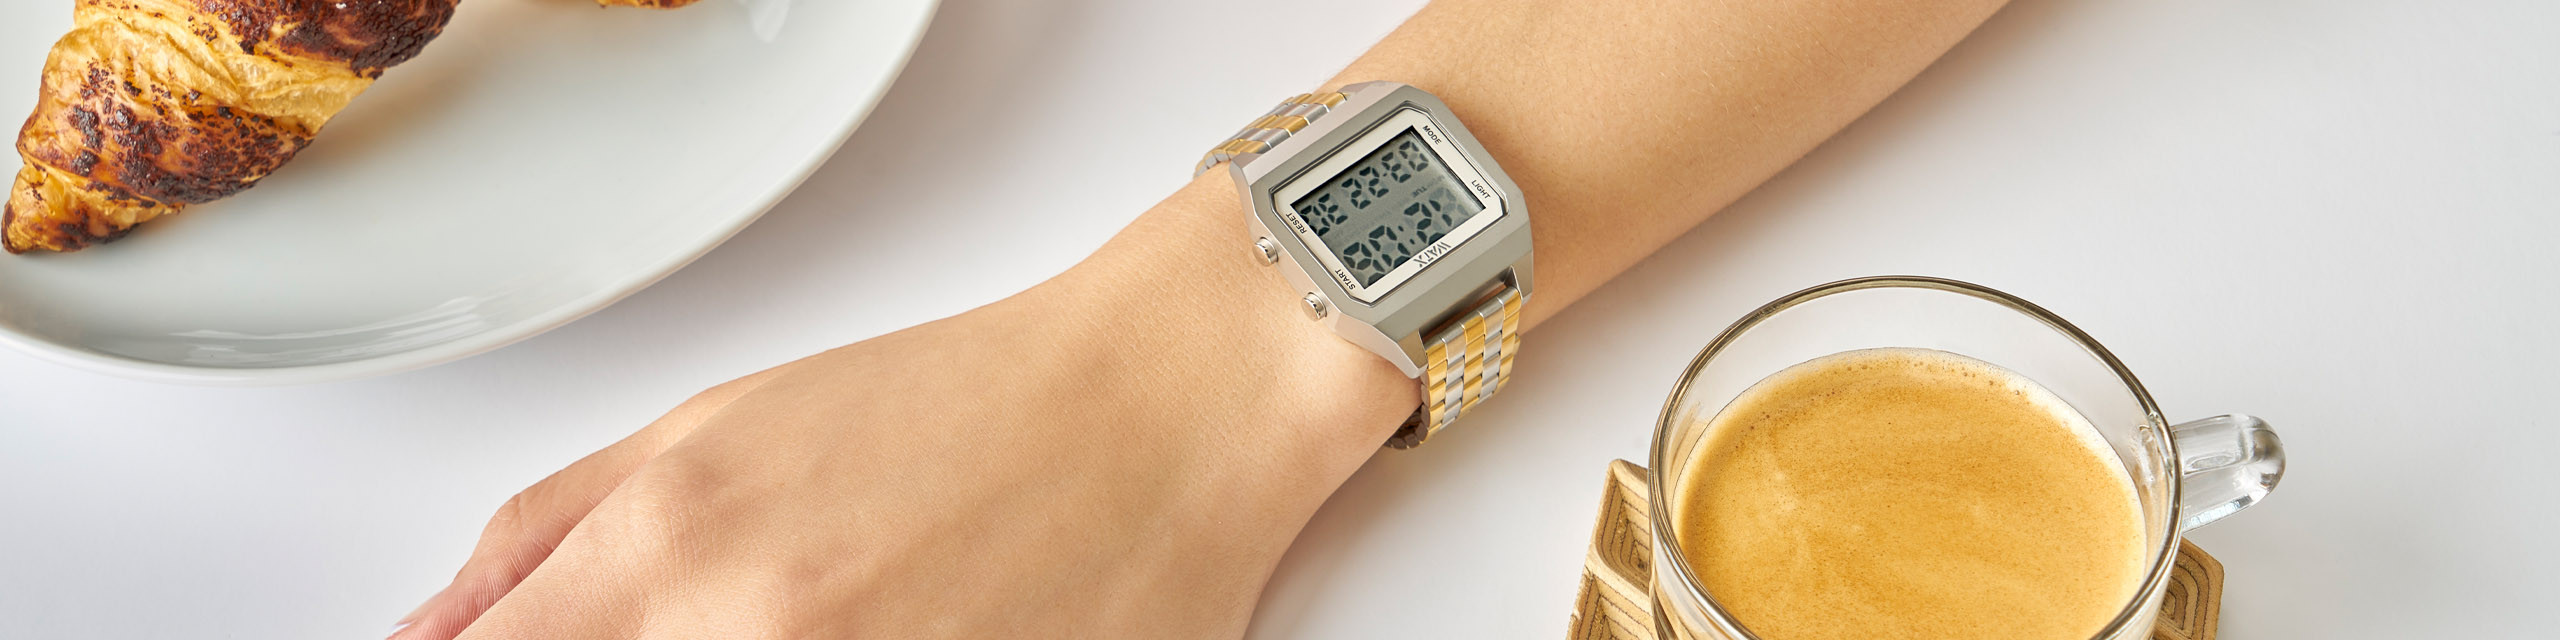 Tienda online de relojes metálicos de mujer - Watx España